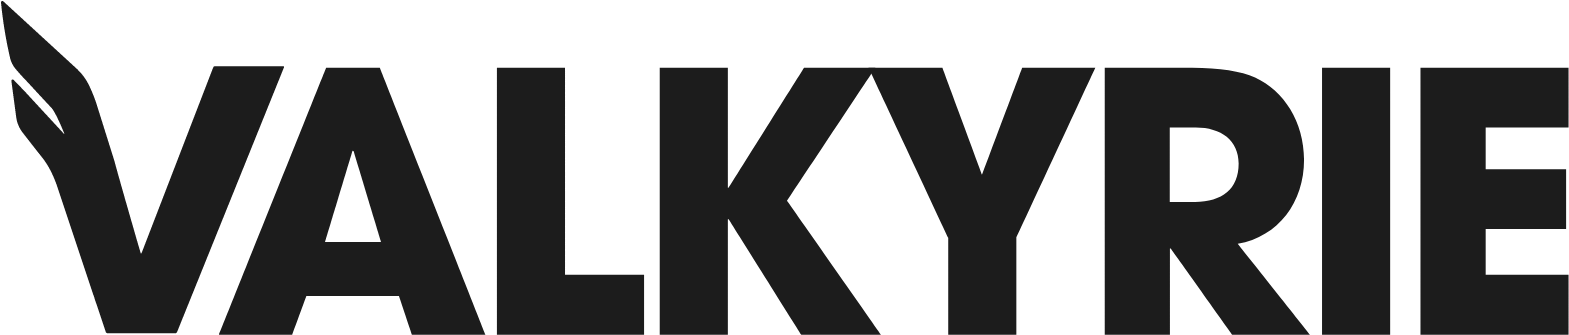 Valkyrie ETF logo large (transparent PNG)